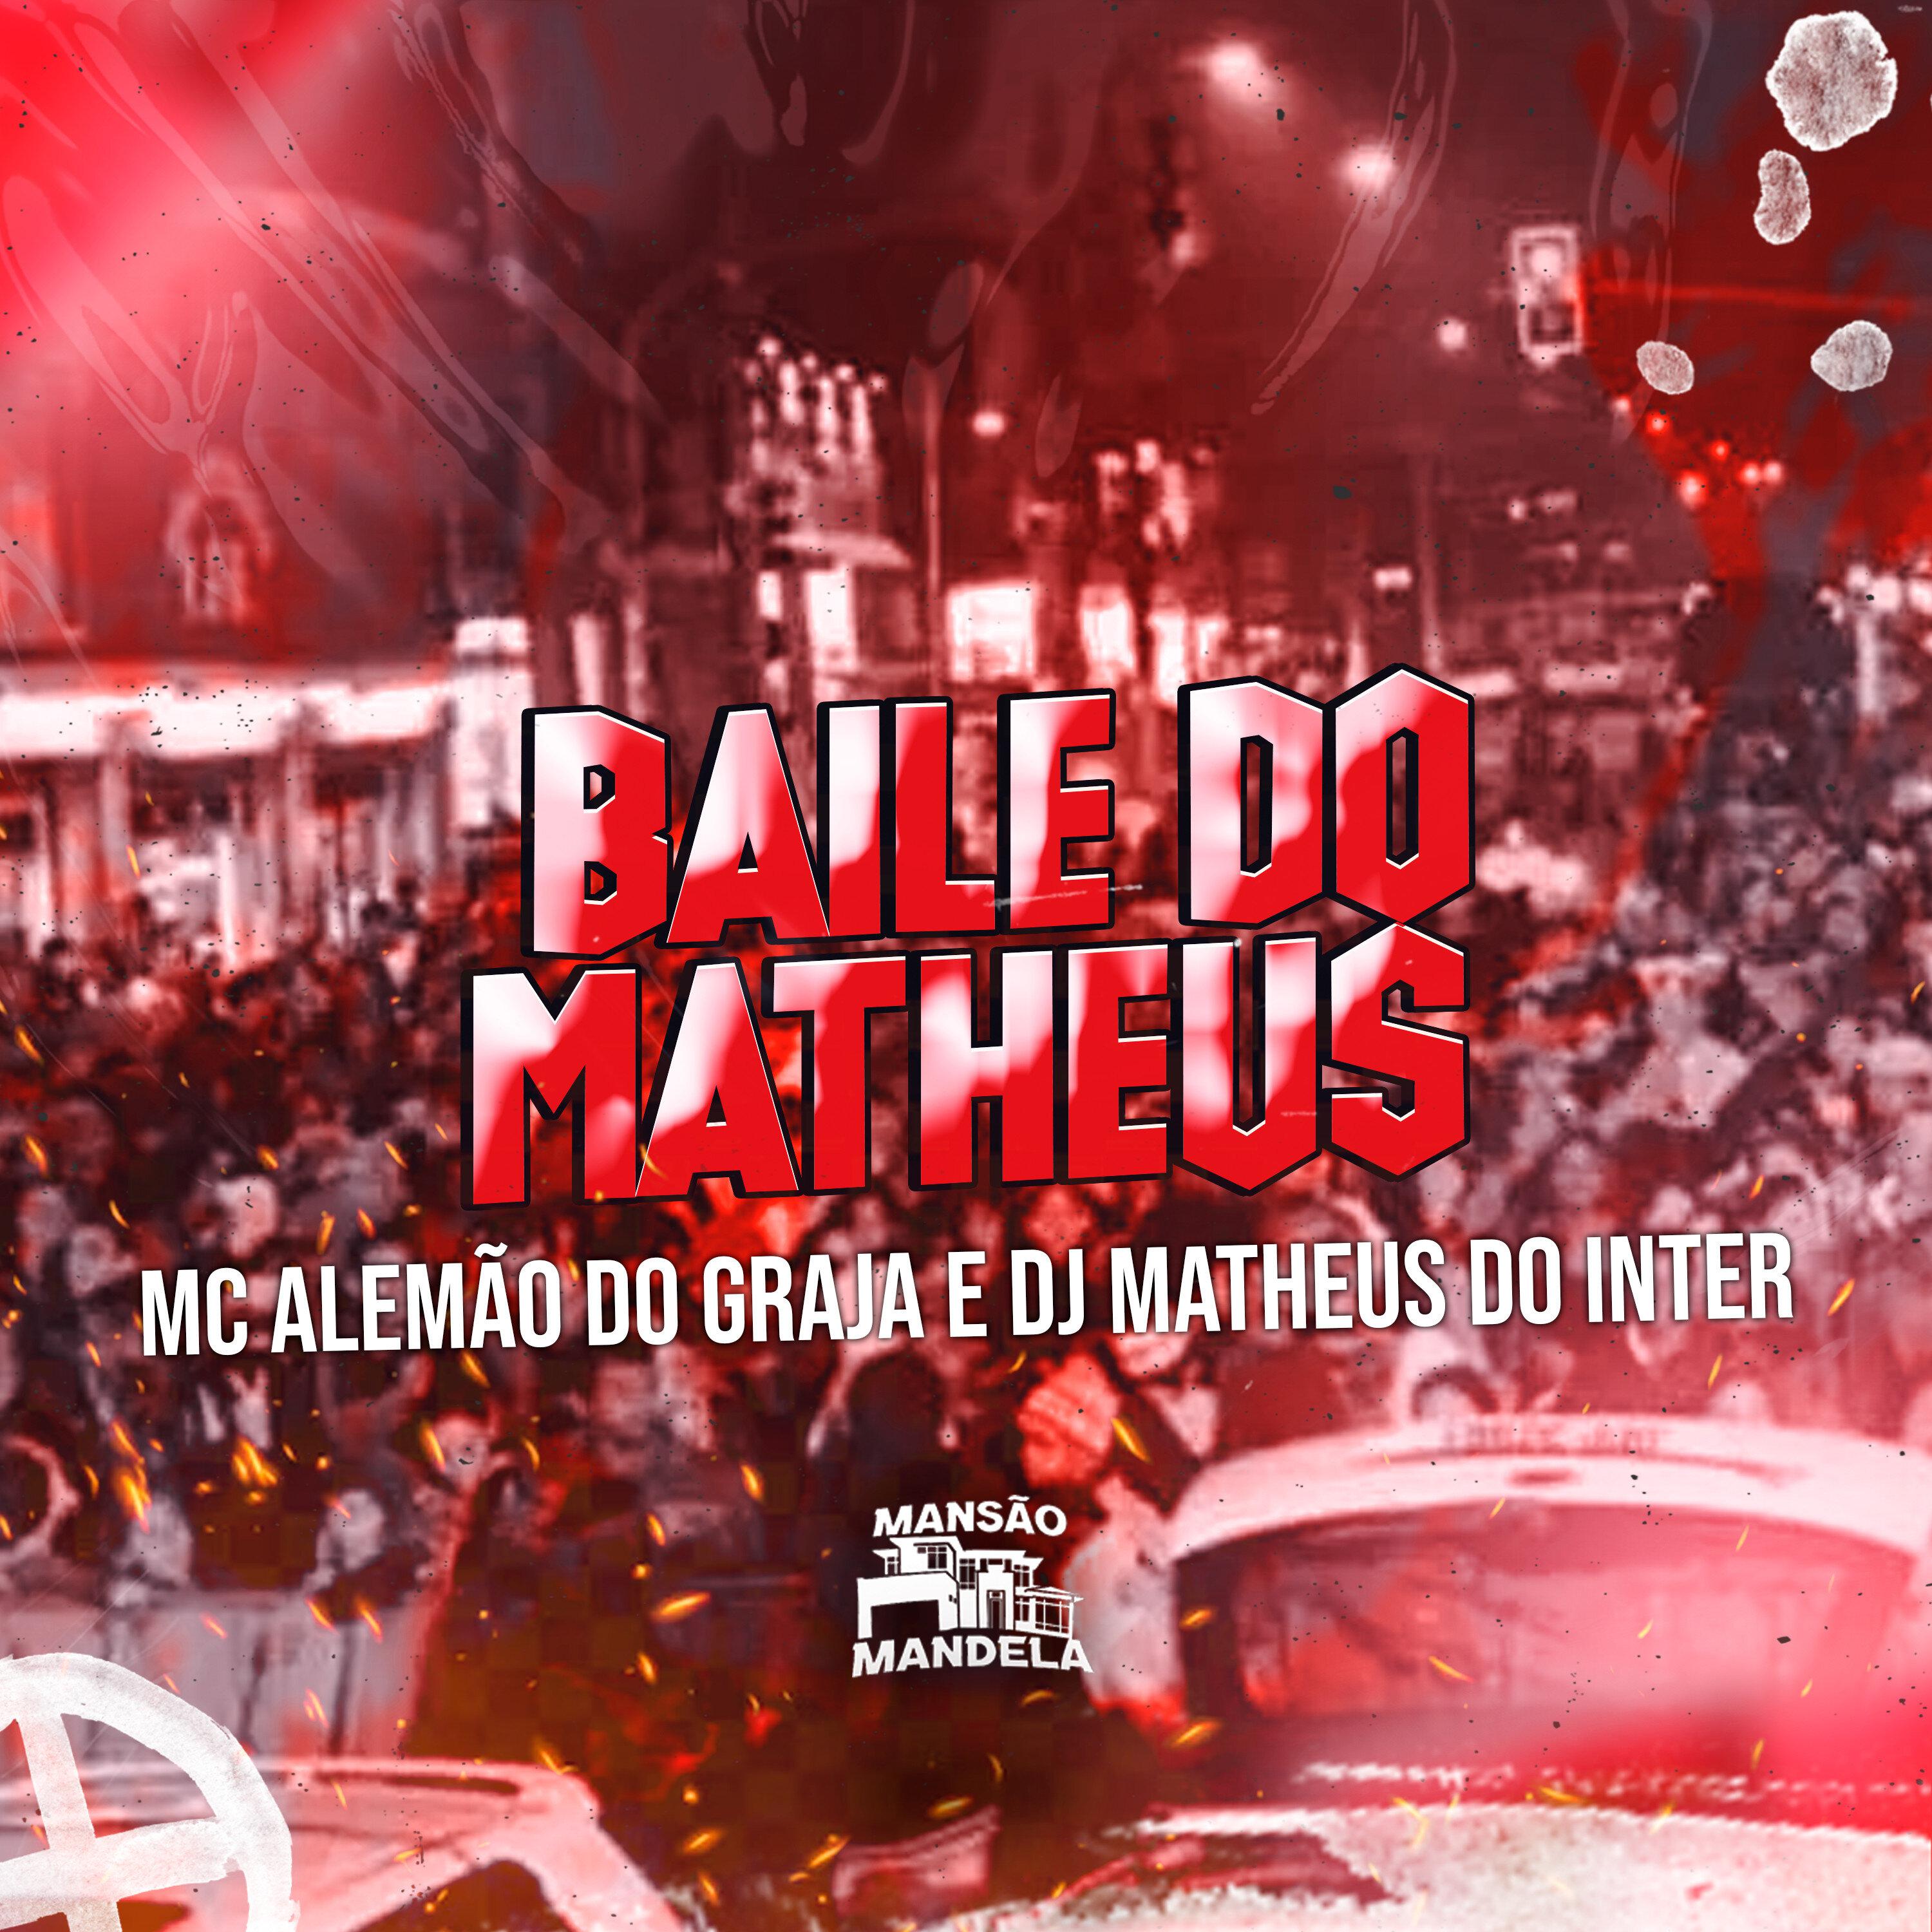 MC Alemão do Graja - Baile do Matheus